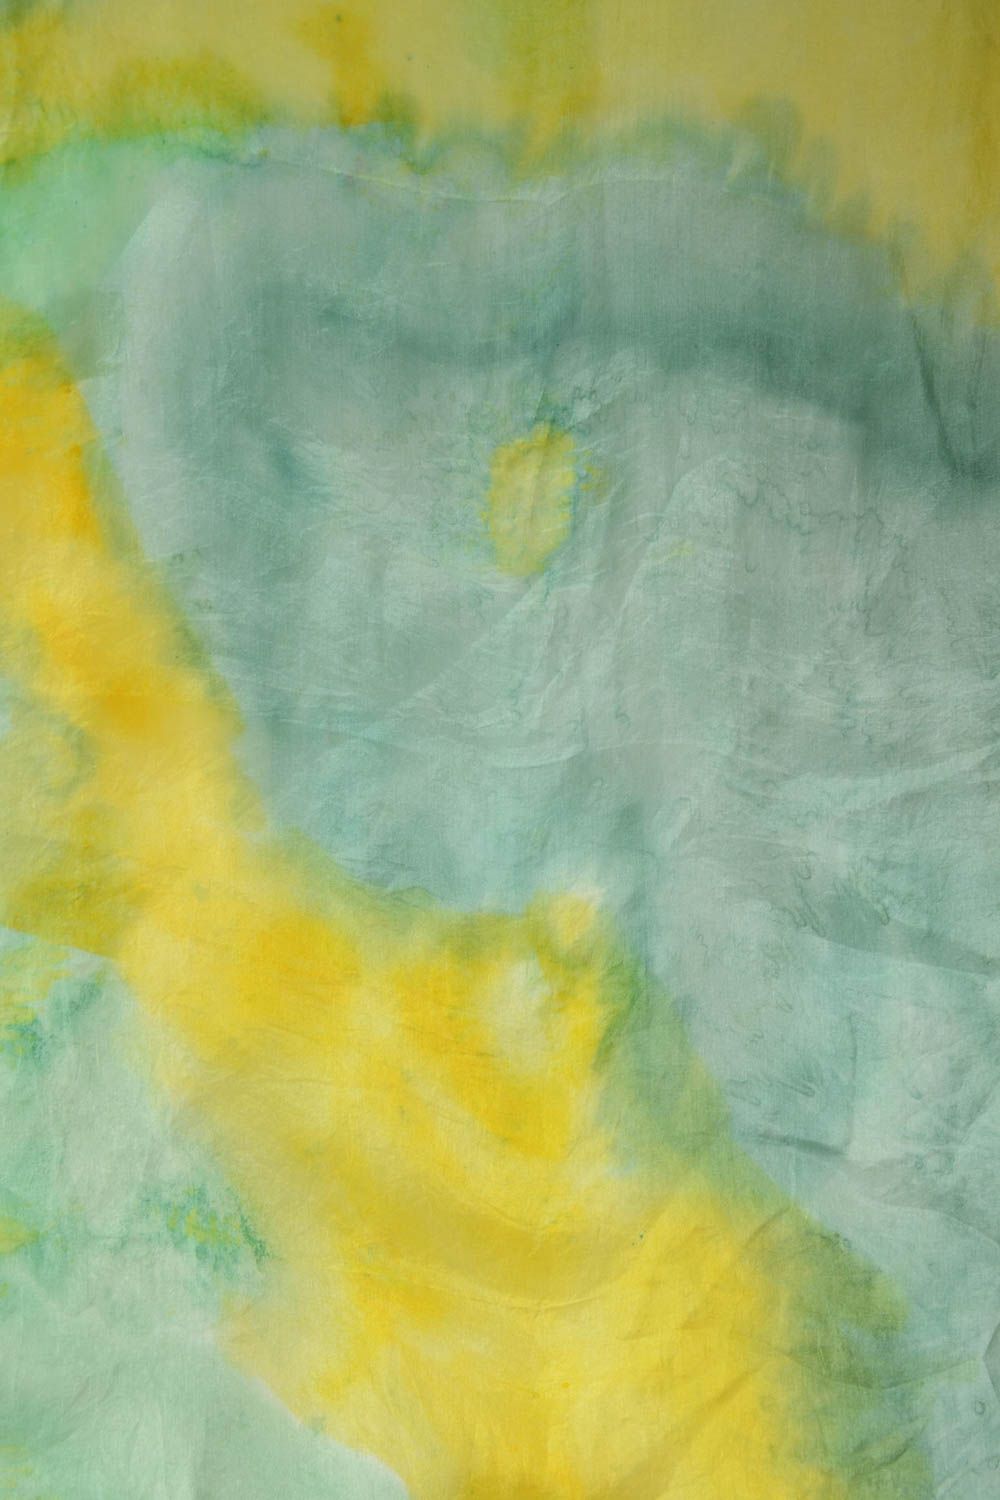 Платок ручной работы платок из шелка женский аксессуар в технике батик фото 3